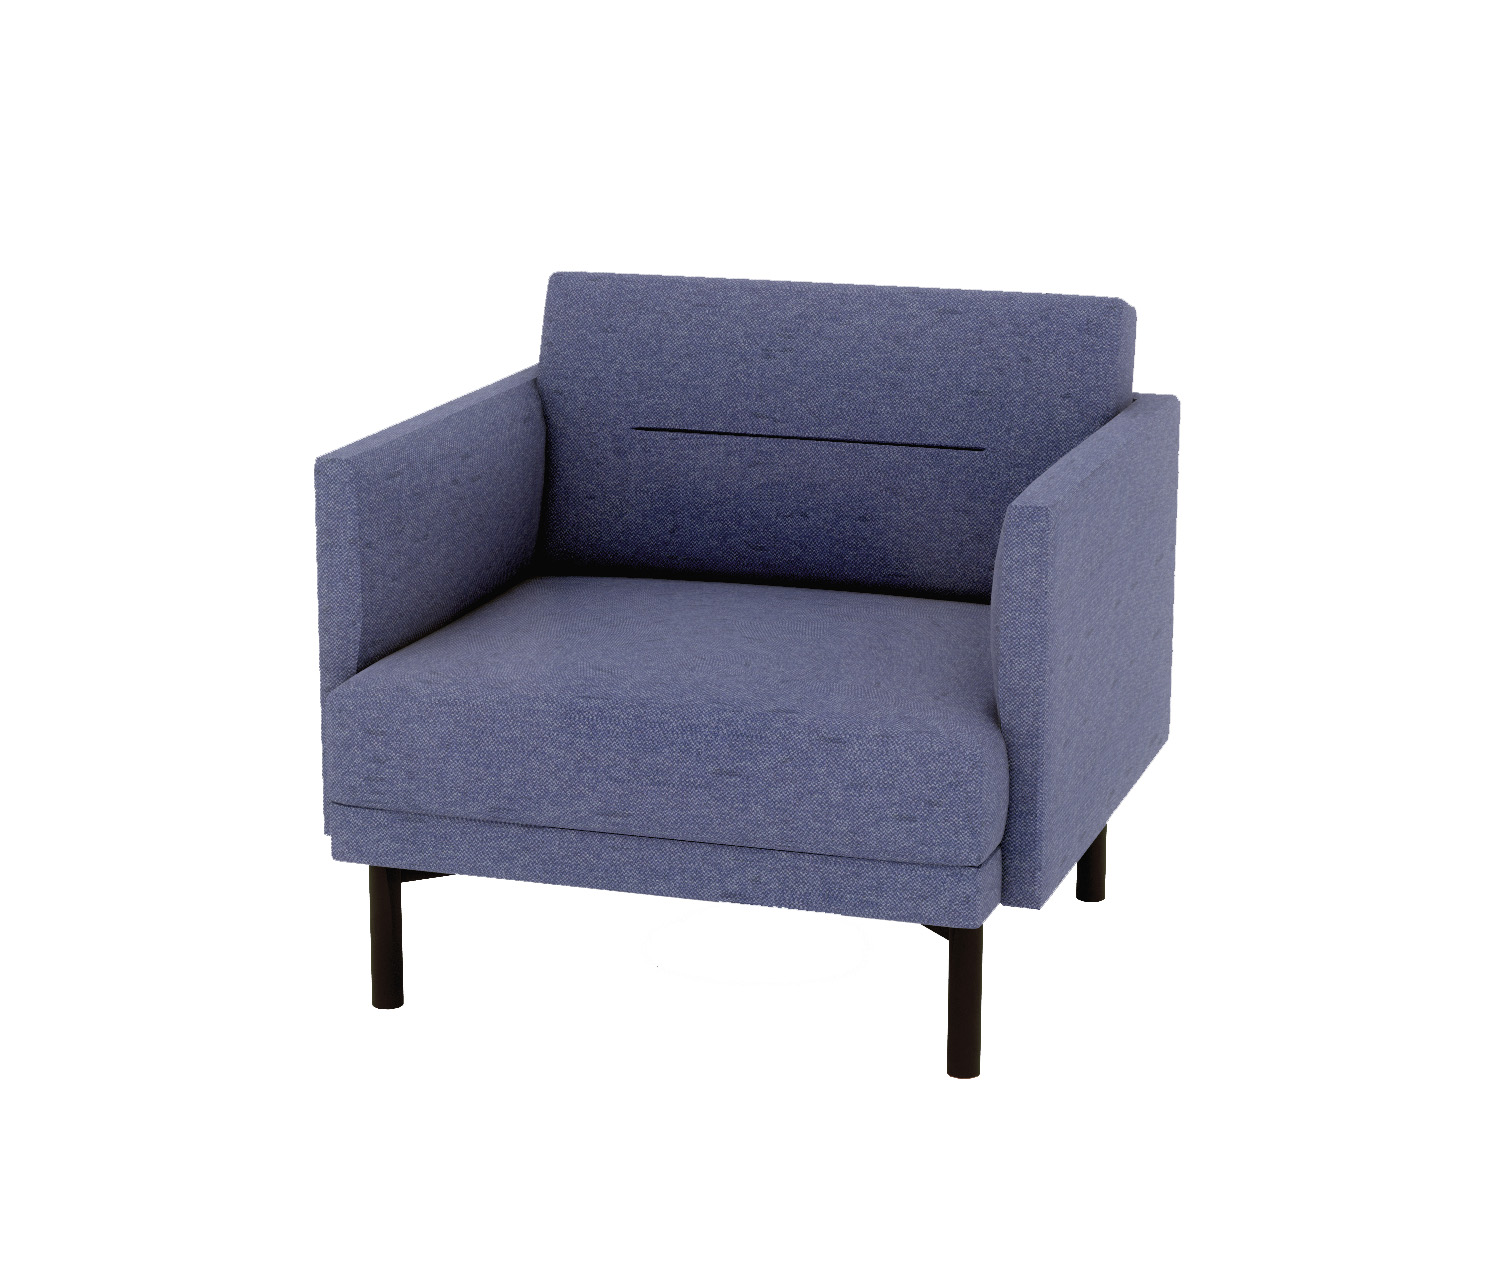 NC61690 - The Blue Liberty Club Chair